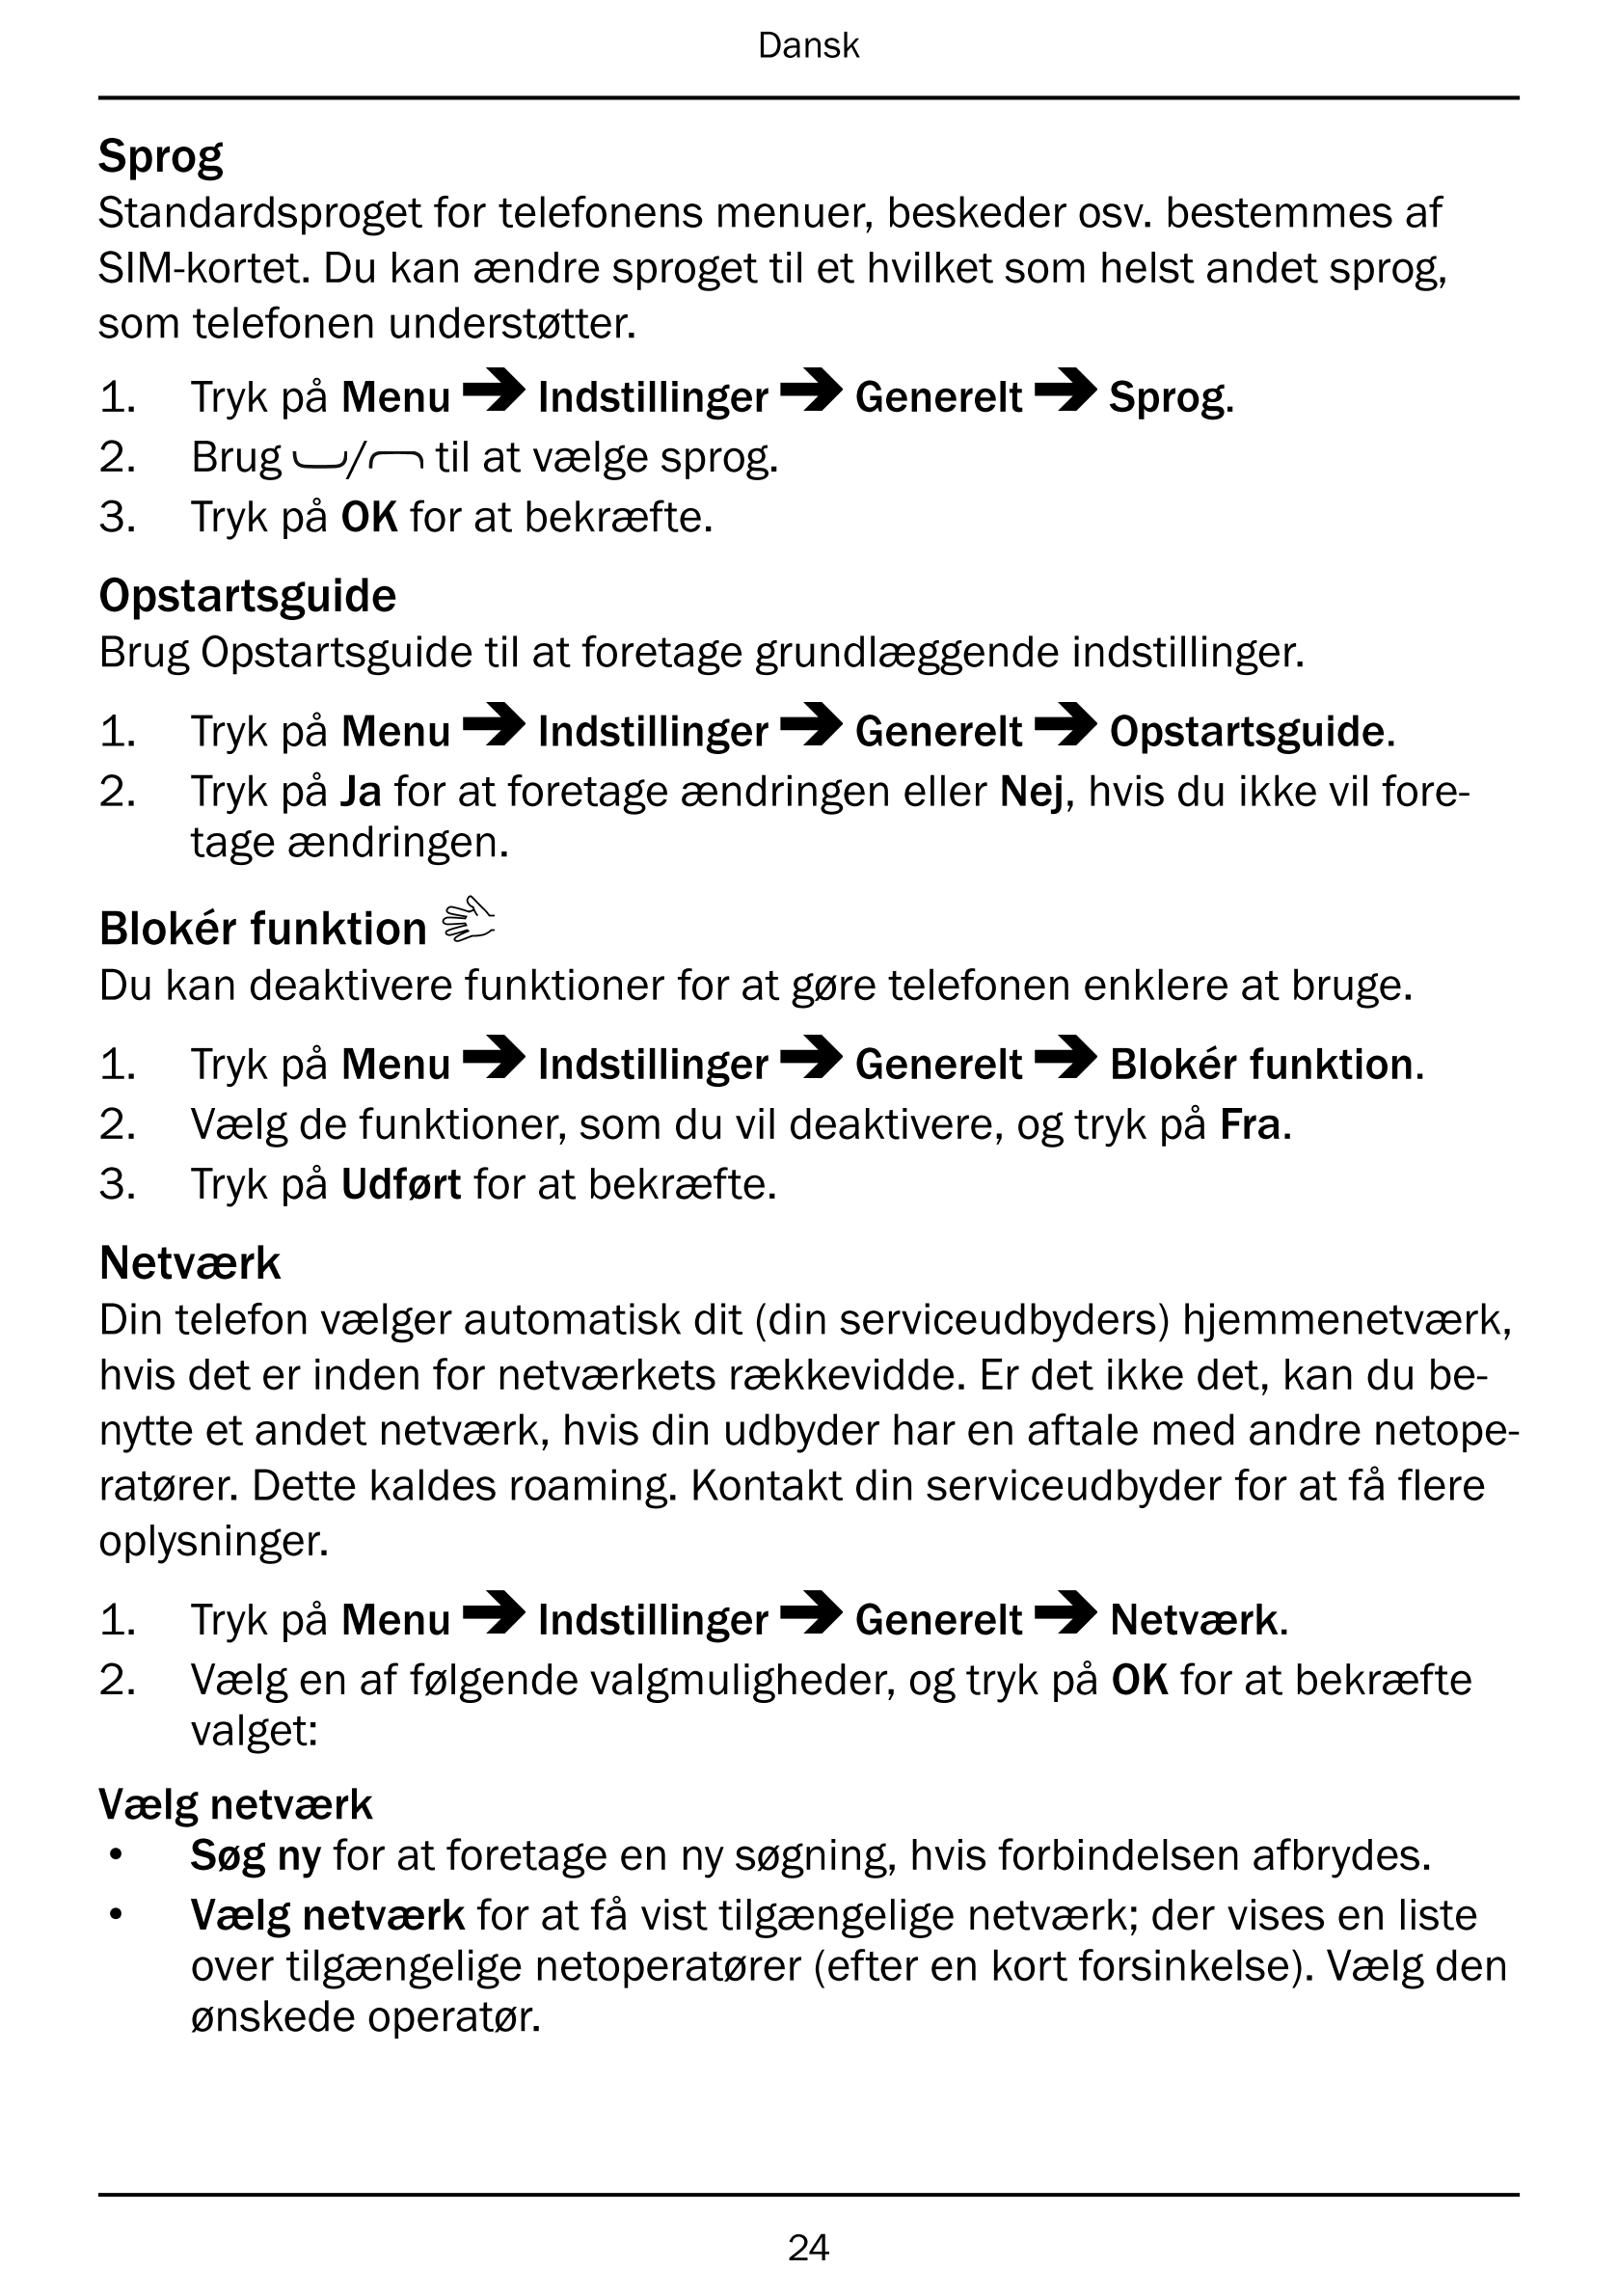 Dansk
Sprog
Standardsproget for telefonens menuer, beskeder osv. bestemmes af
SIM-kortet. Du kan ændre sproget til et hvilket so